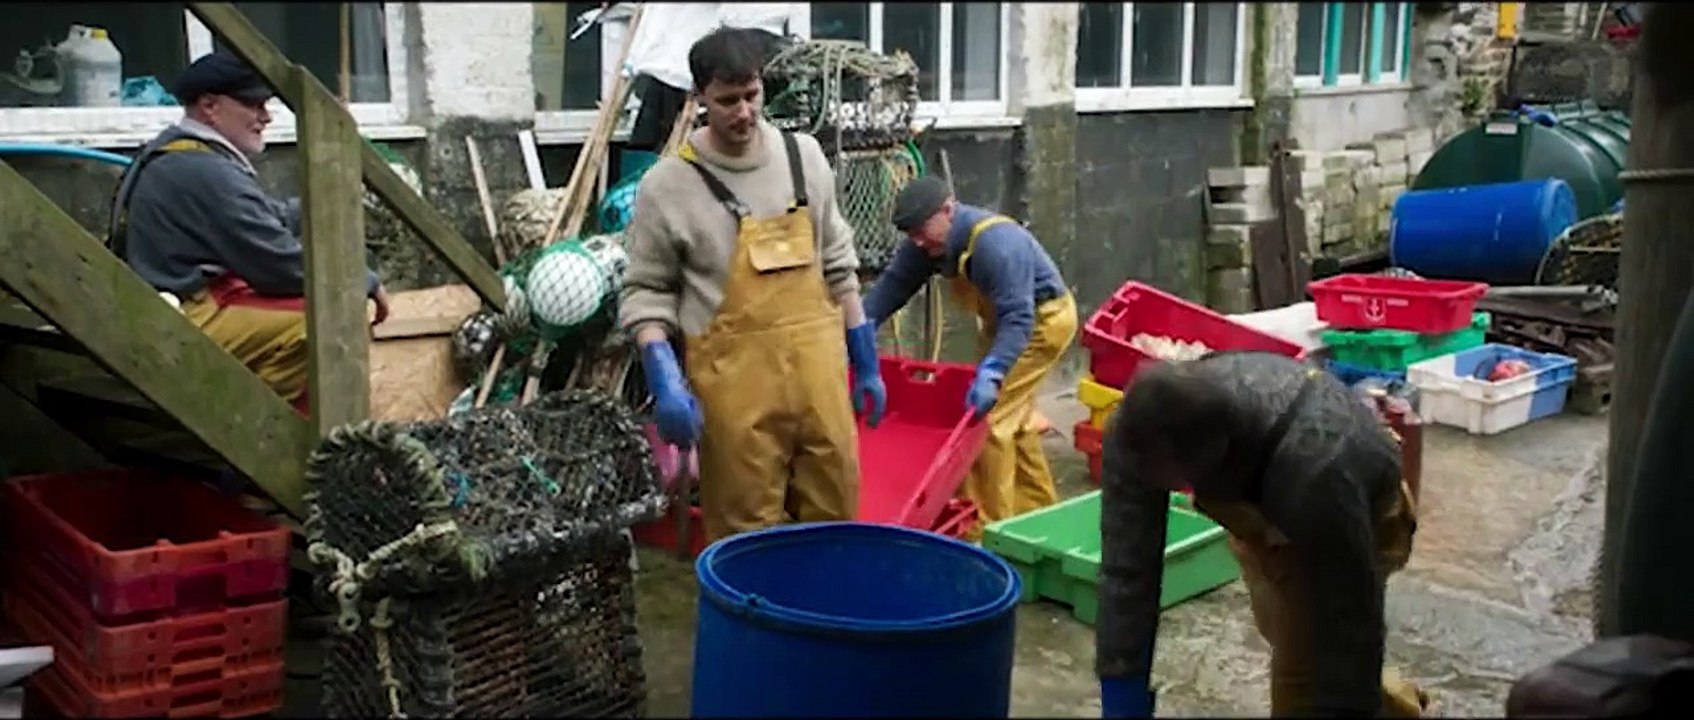 Fisherman's Friends Vom Kutter in die Charts Film Trailer